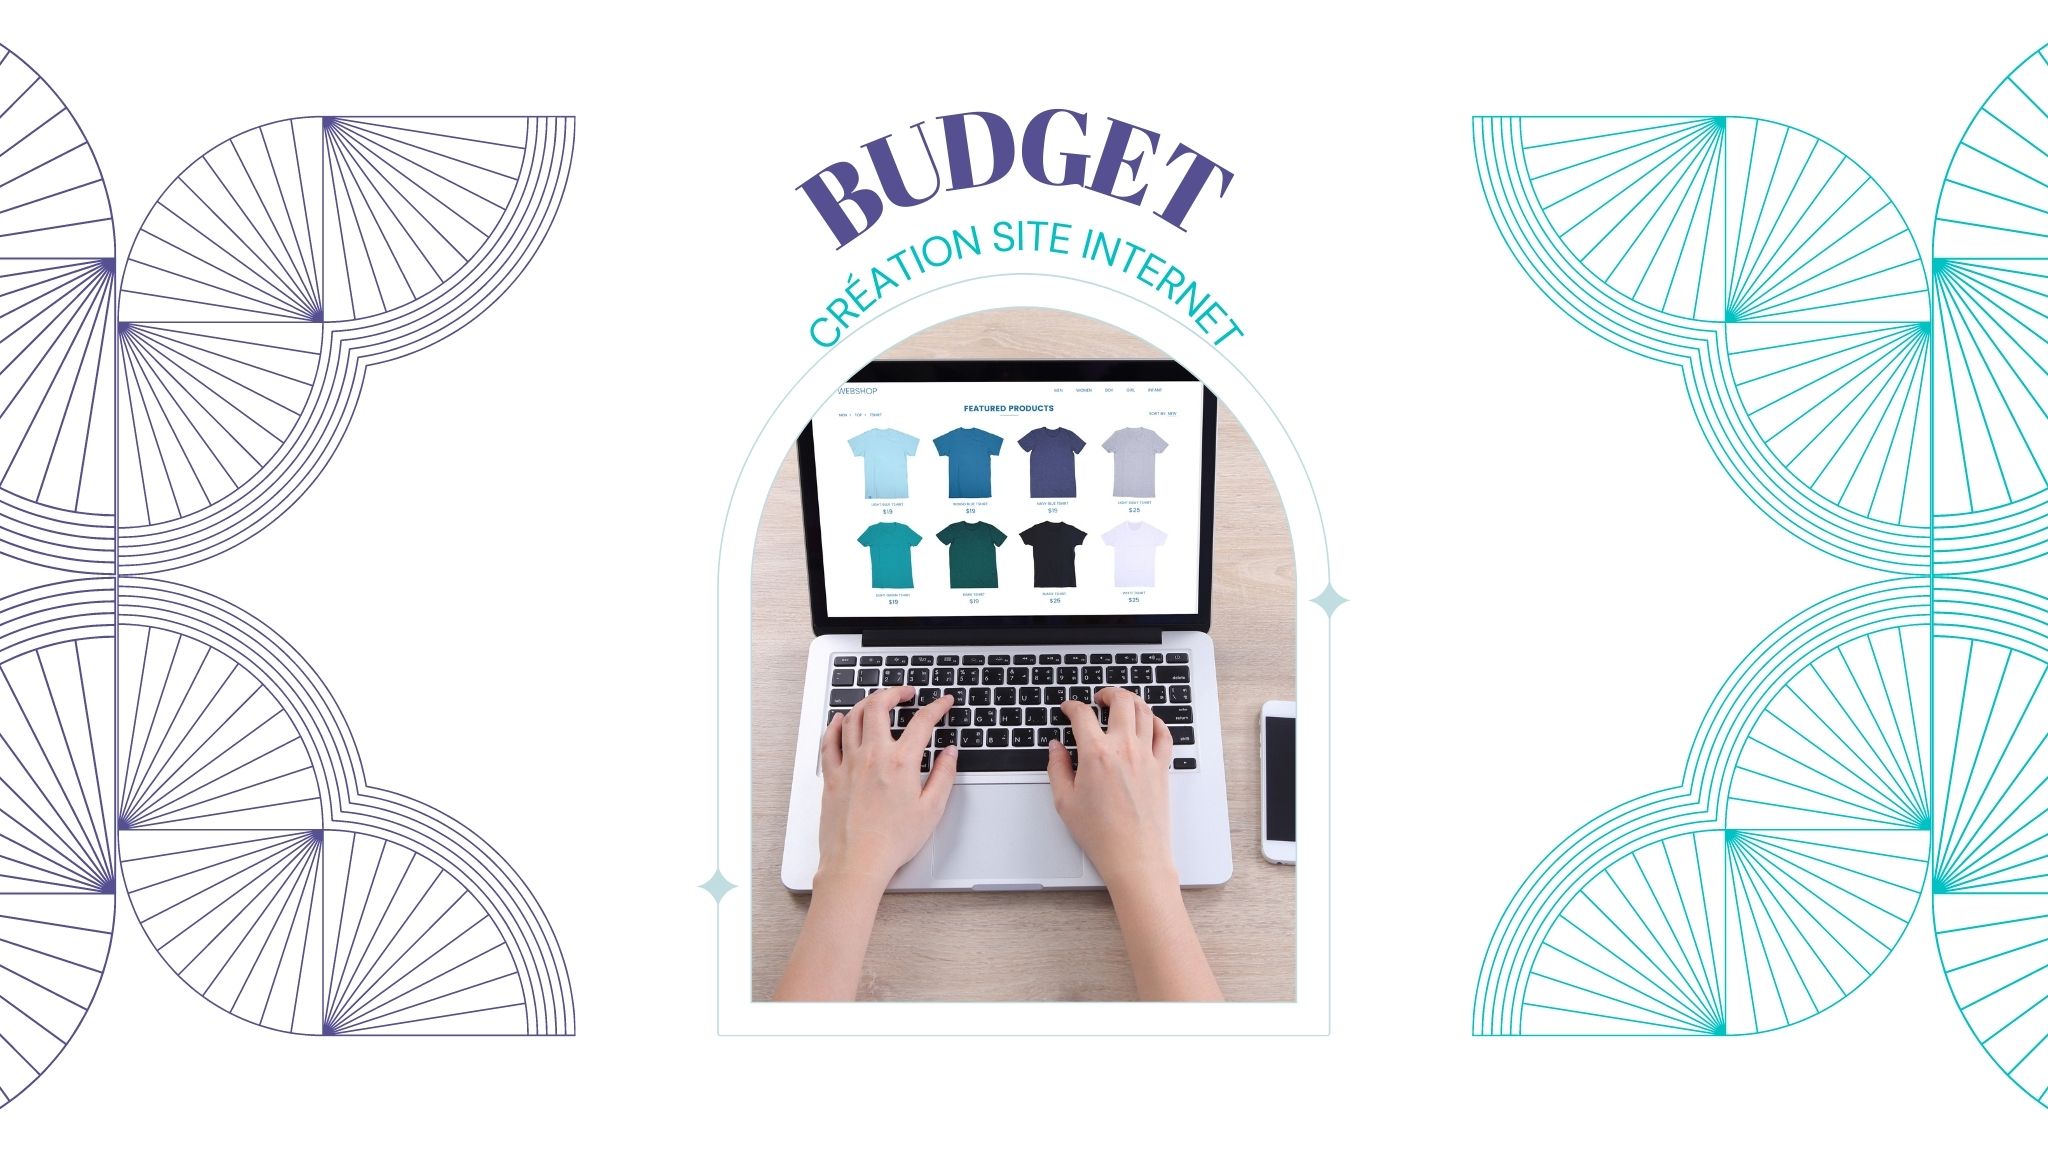 budget création site internet